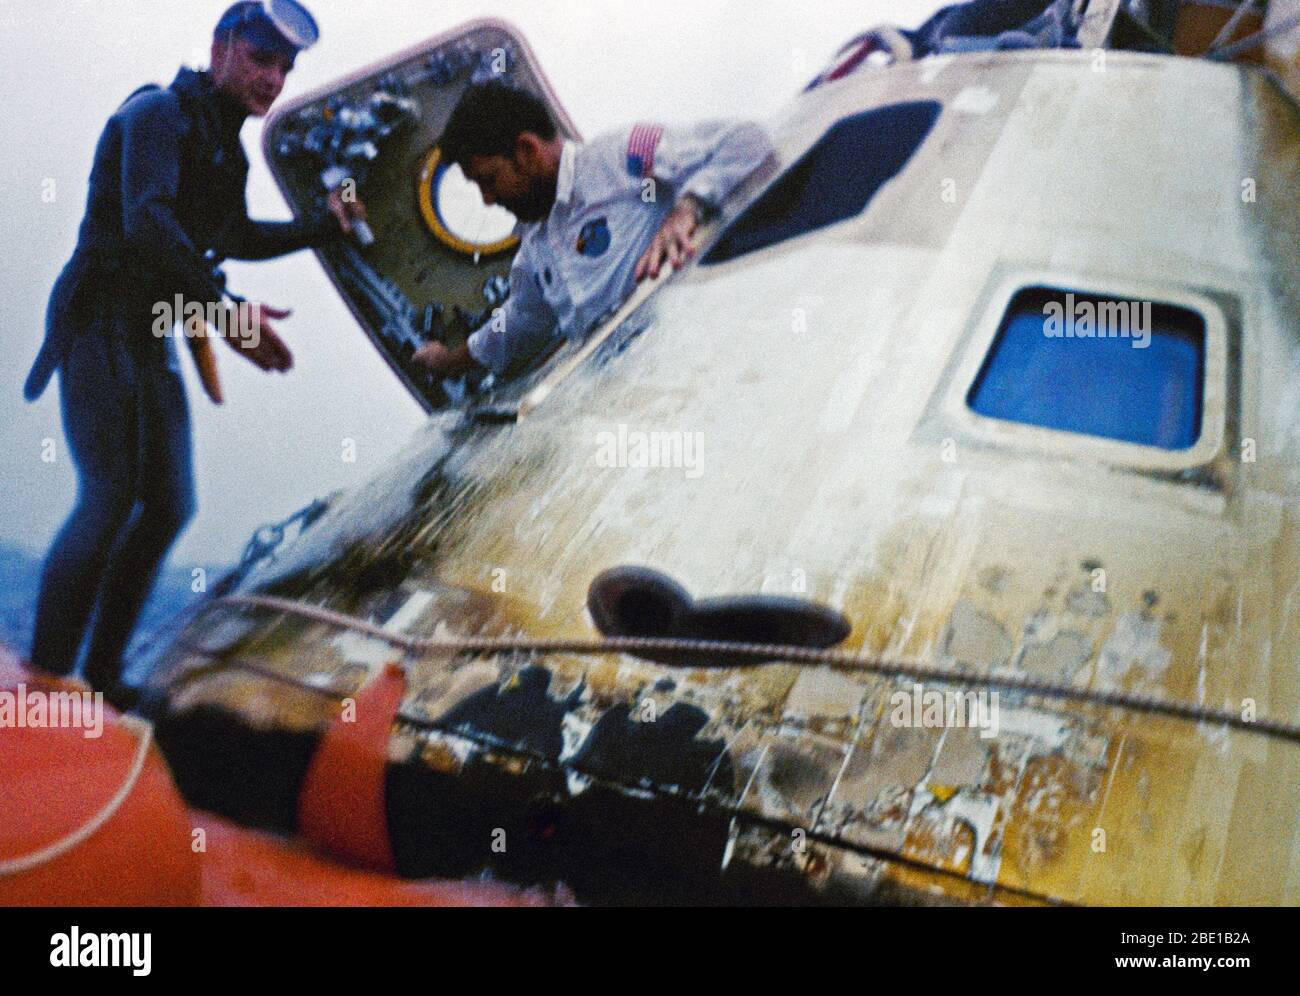 L'astronaute Walter M. Schirra, Jr., commandant d'Apollo 7, les enclos l'engin spatial pendant des opérations de valorisation dans l'Atlantique. Il est assisté par un membre de l'équipe de l'US Navy frogman. Le vaisseau Apollo 7 éclaboussé vers le bas à 7:11 heures, le 22 octobre 1968, d'environ 200 milles marins au sud-ouest des Bermudes. Banque D'Images